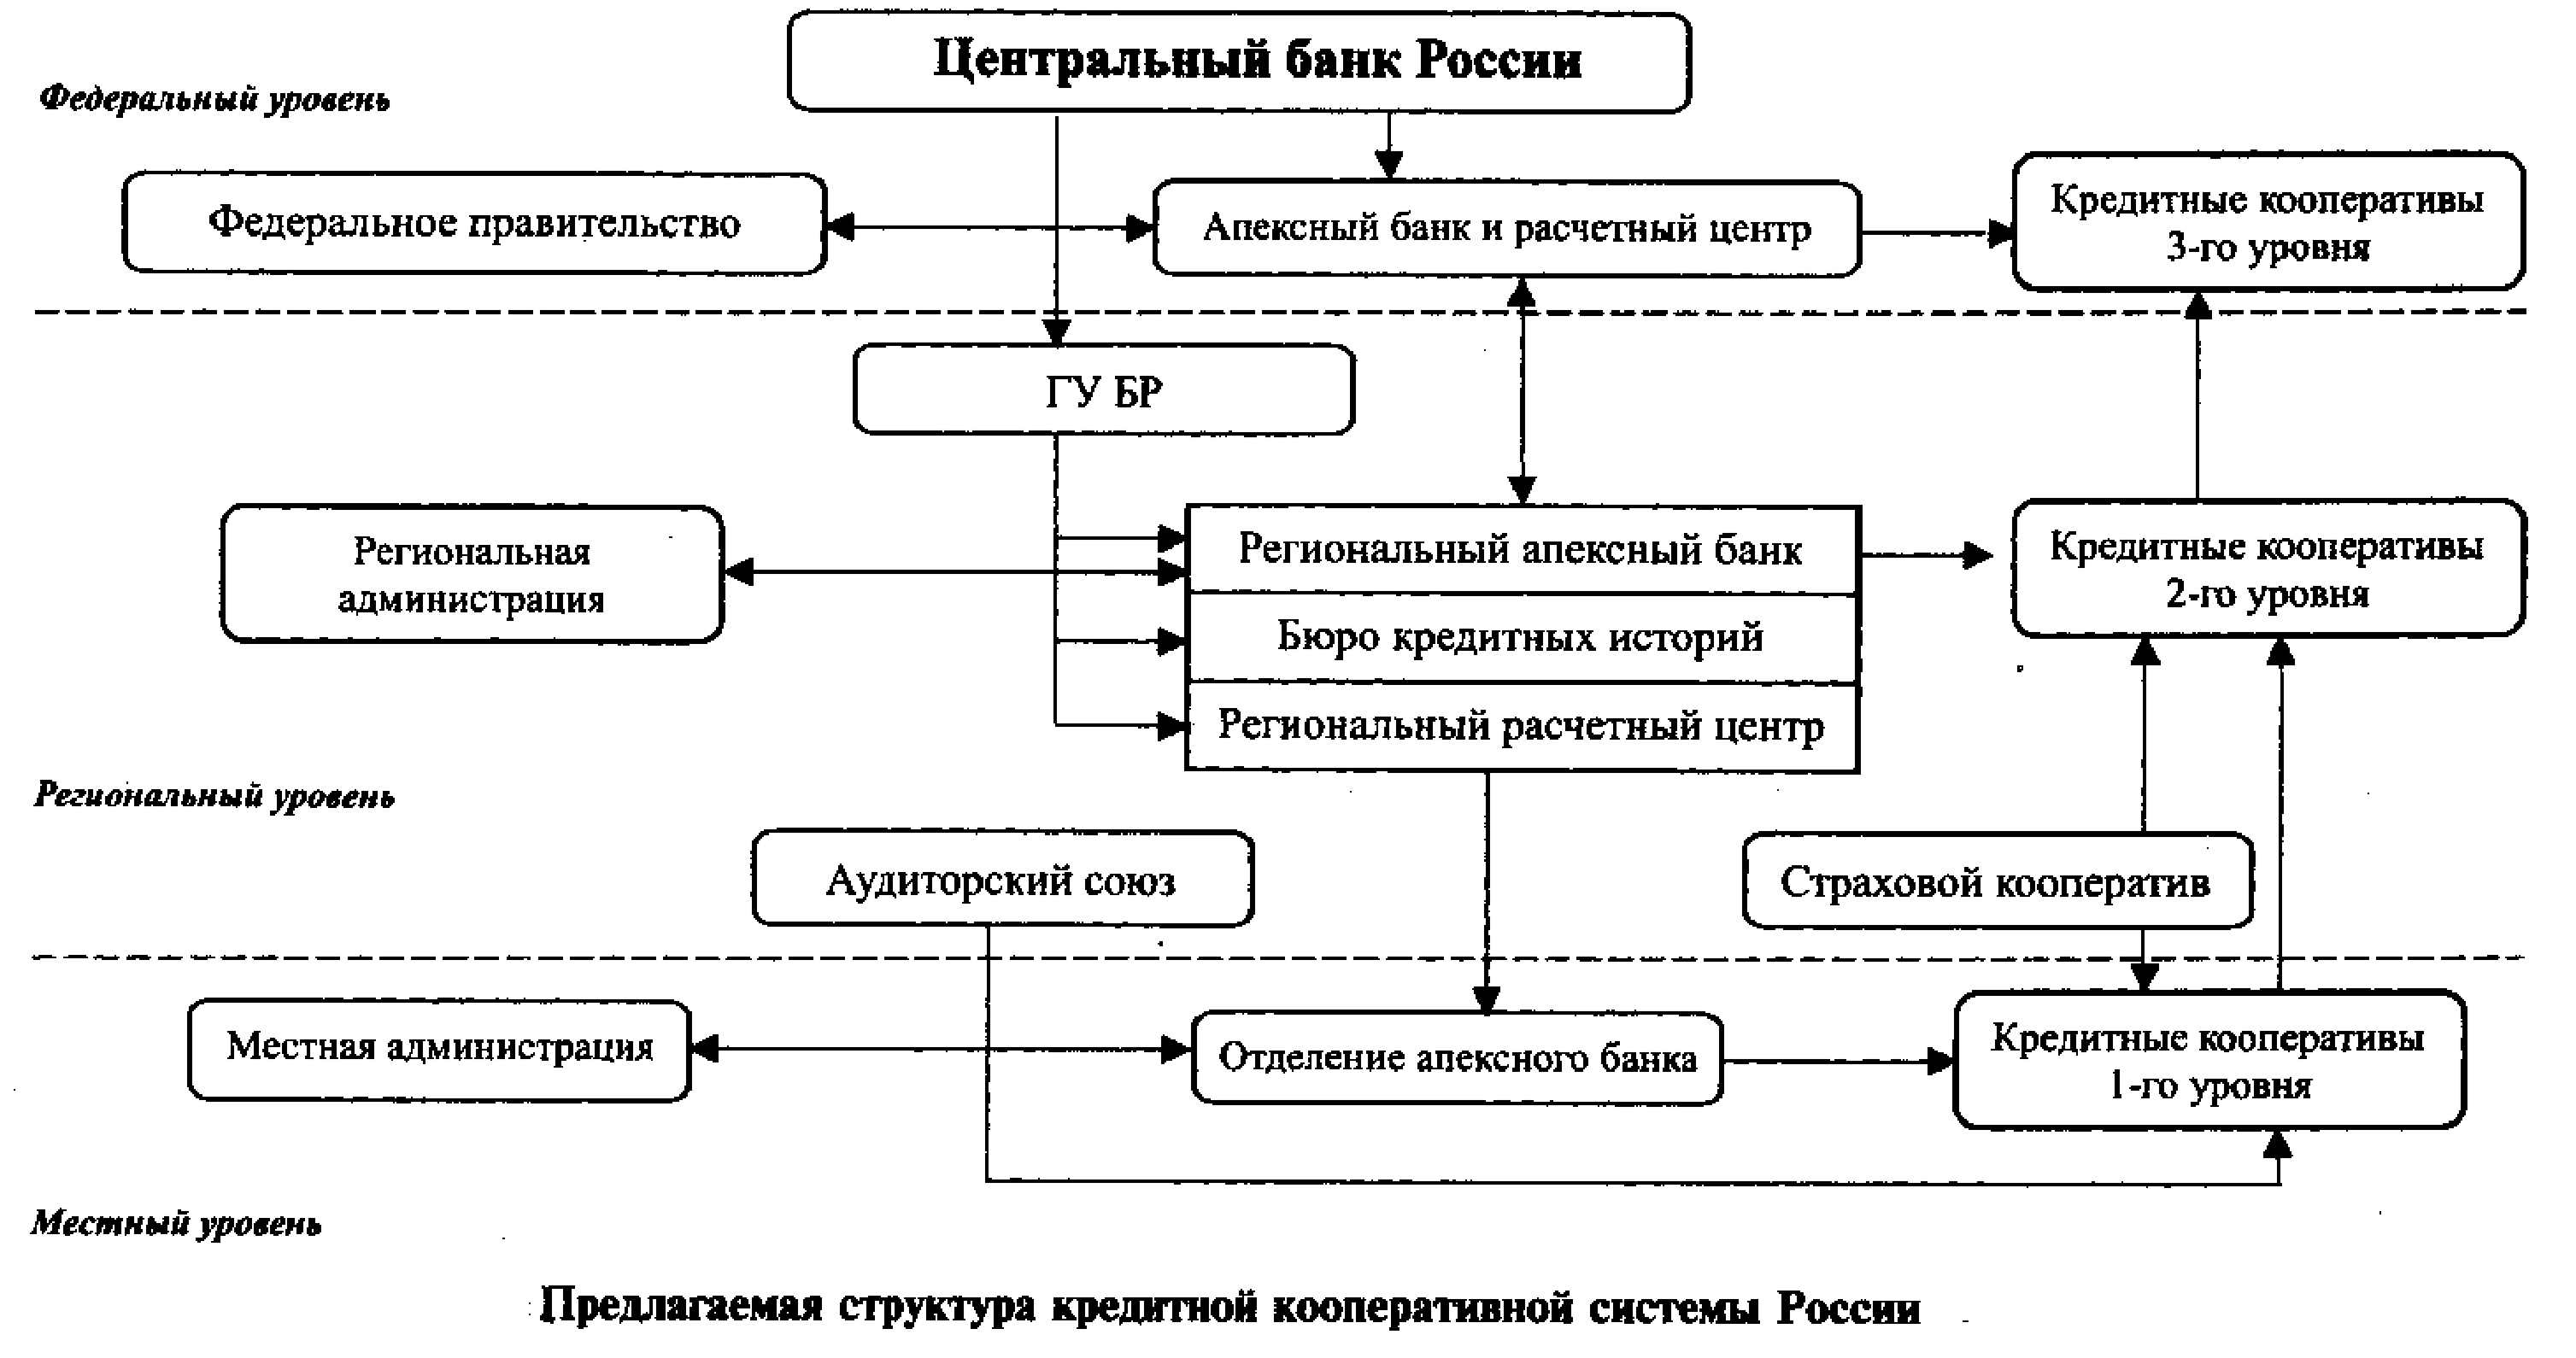 Предлагаемая структура кредитной кооперативной системы России